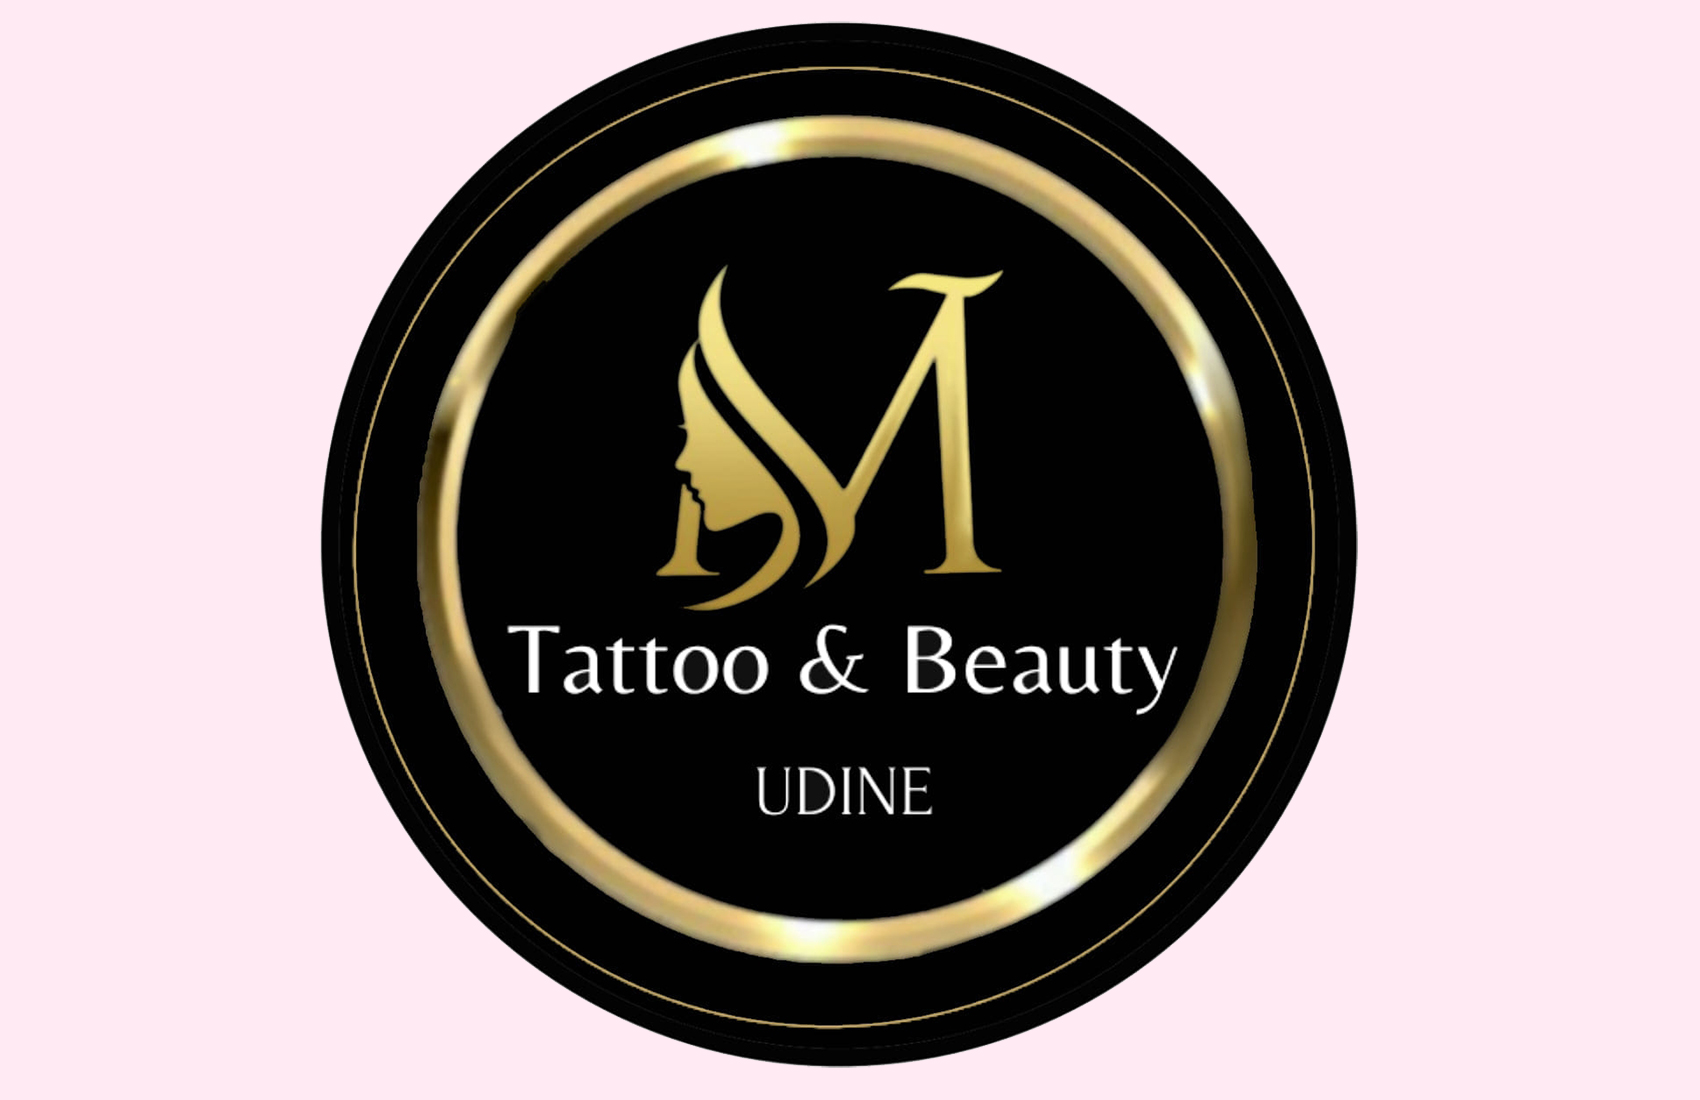 MV Tattoo&Beauty Udine - Udine